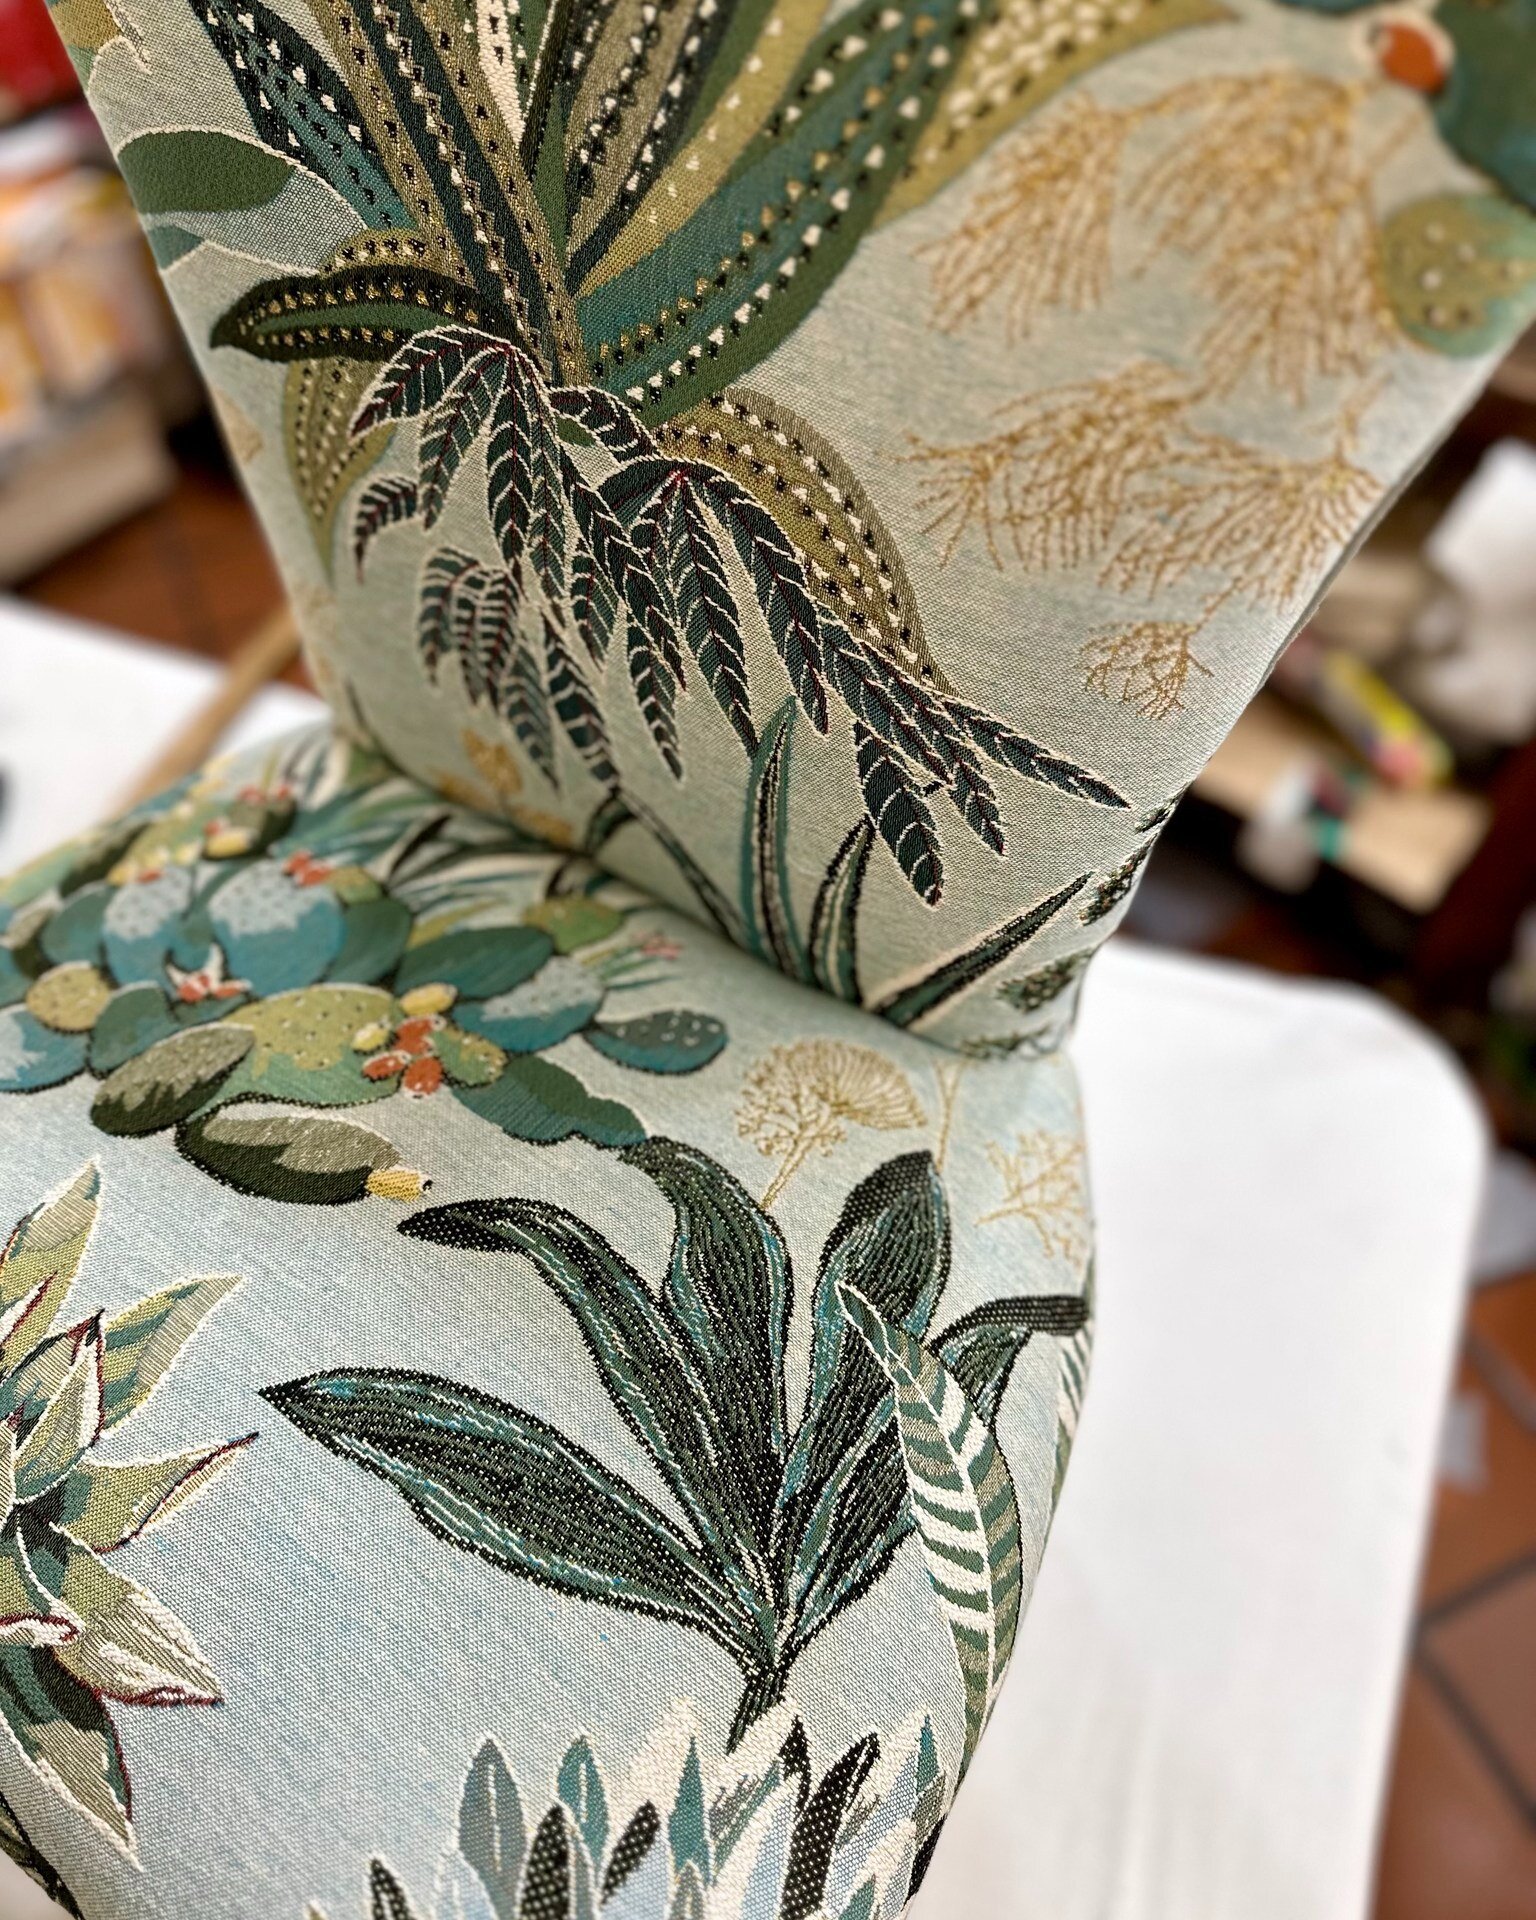 𝗠𝗮𝗾𝘂𝗶𝘀, pezzo forte della collezione 𝗥𝗶𝘃𝗶𝗲𝗿𝗮 di @lelievreparis &egrave; un incredibile tessuto da imbottito su cui &egrave; raffigurato un meraviglioso giardino botanico ispirato alla macchia mediterranea. 🌿🌺

Un disegno dai toni fresc